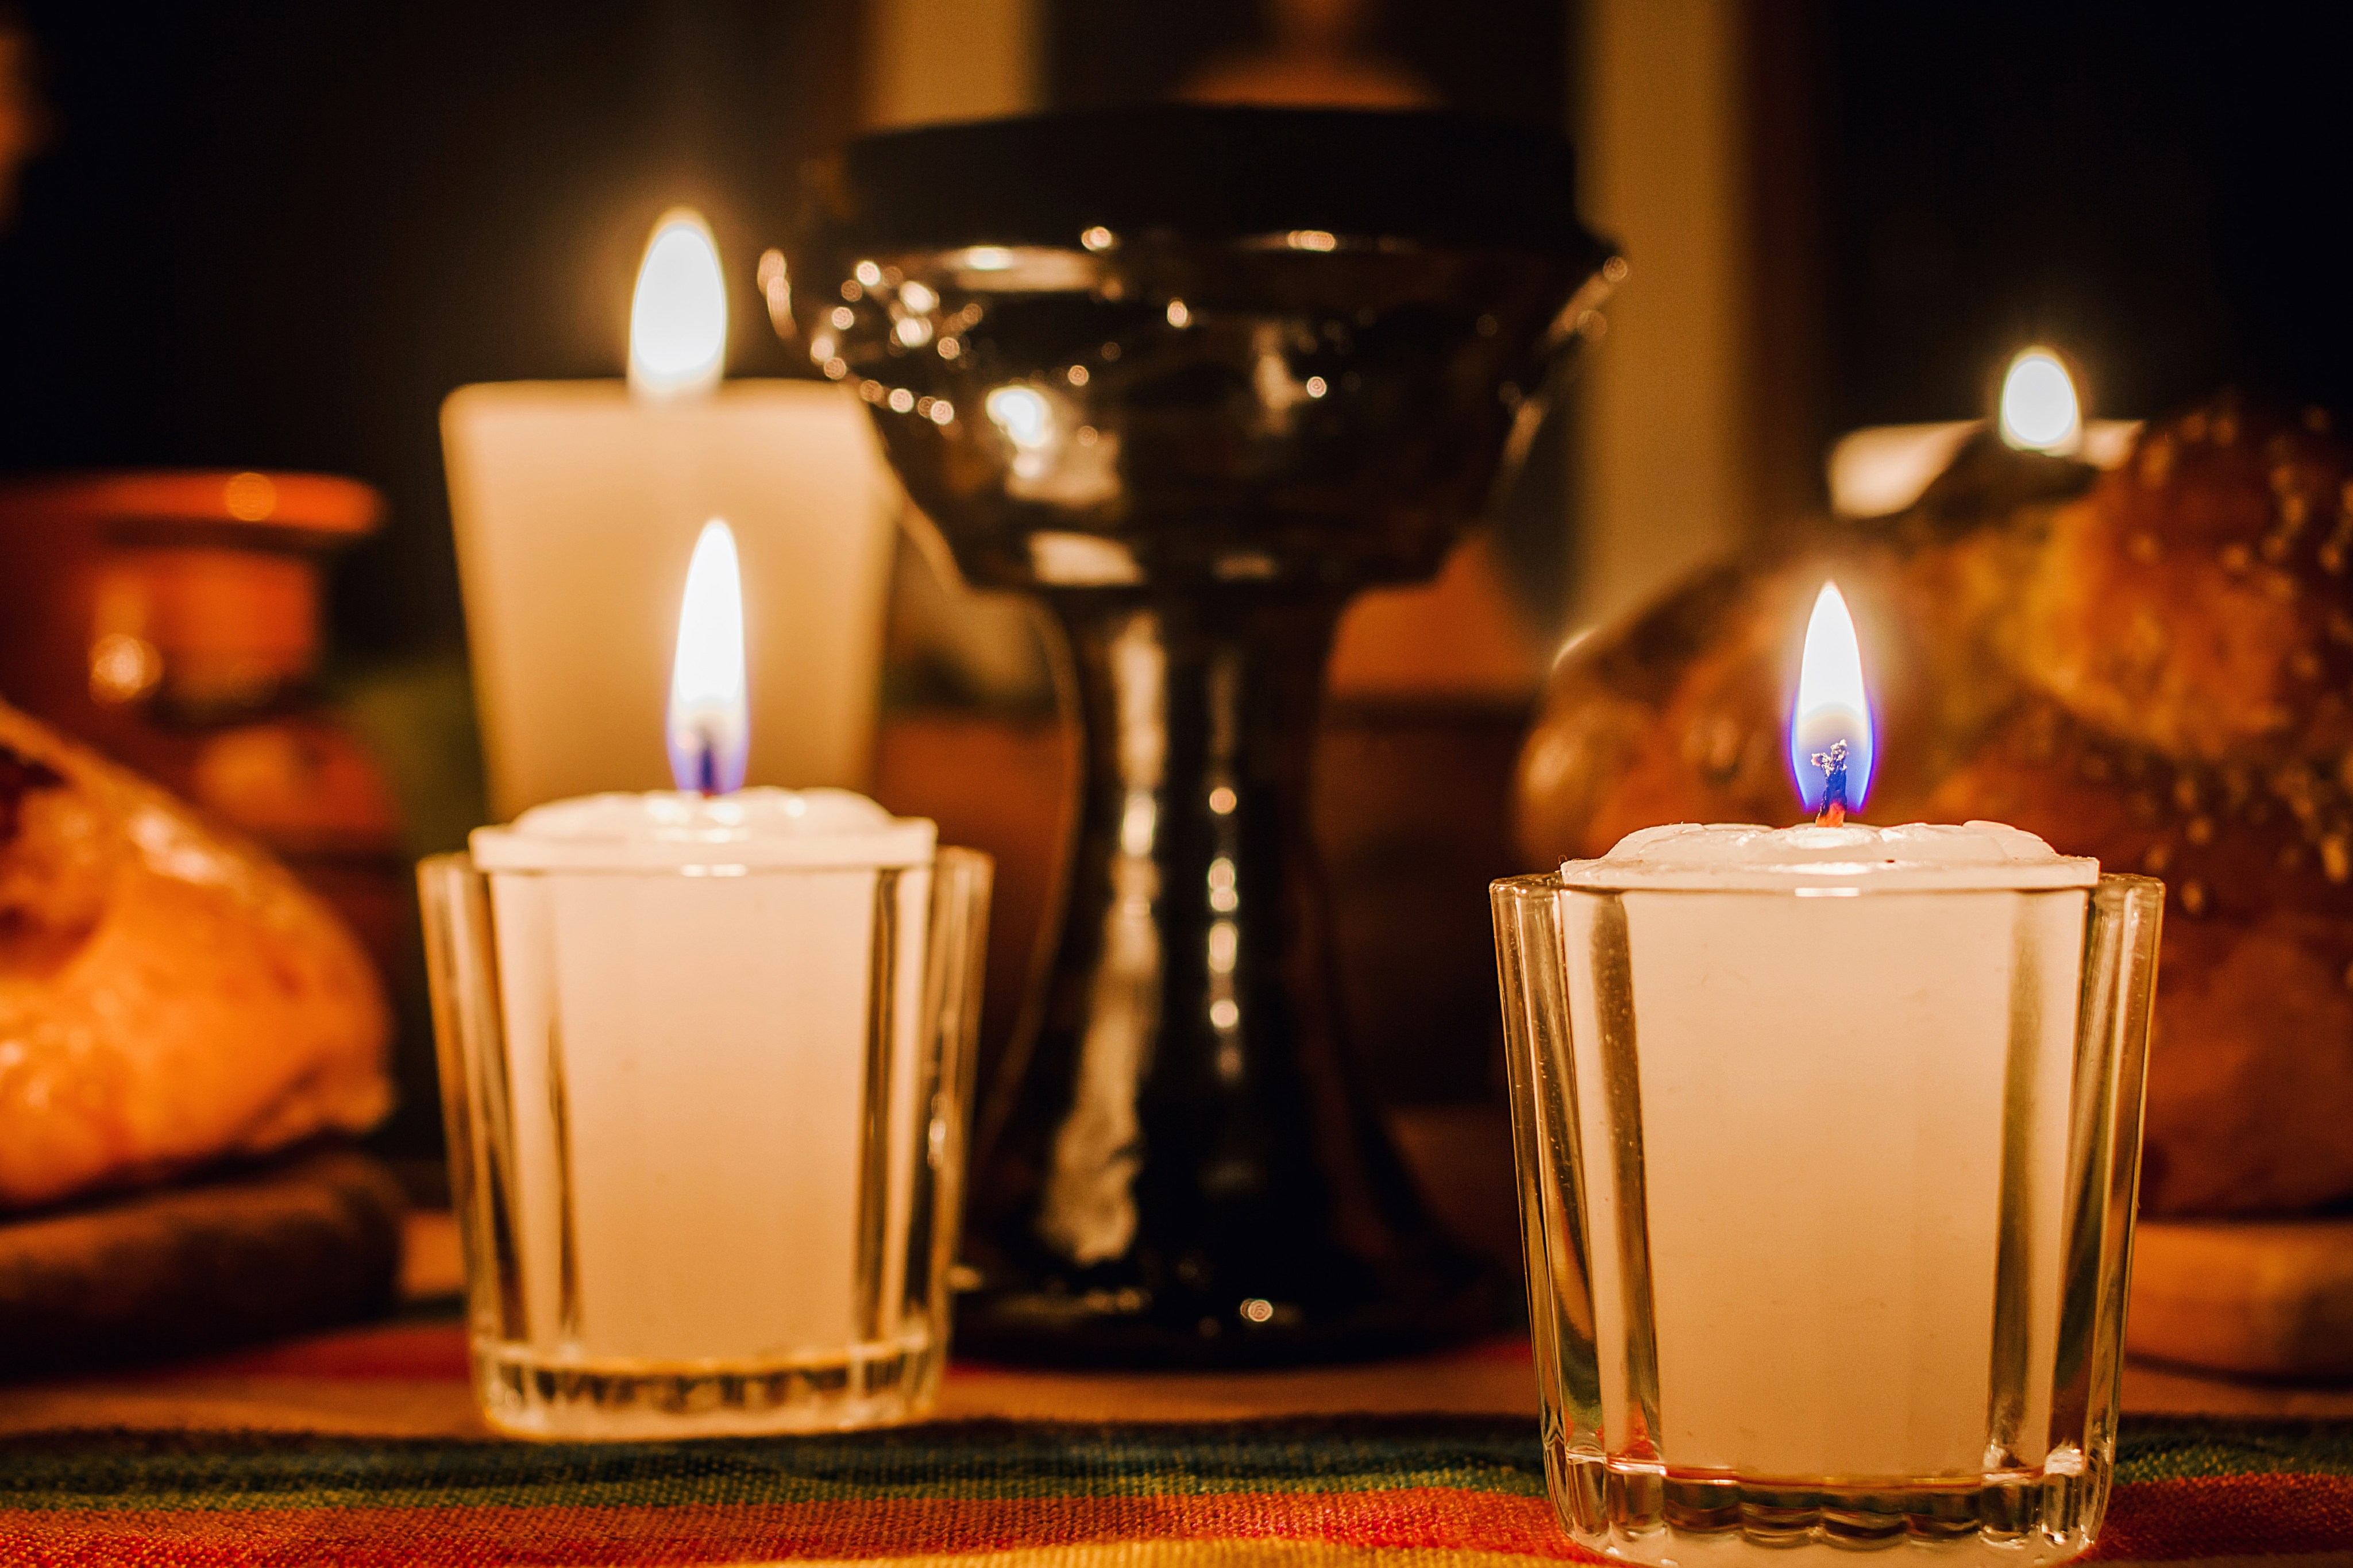 Día de las Velitas: ¿Qué simboliza cada color y cuántas velas puedo poner?  - Tikitakas